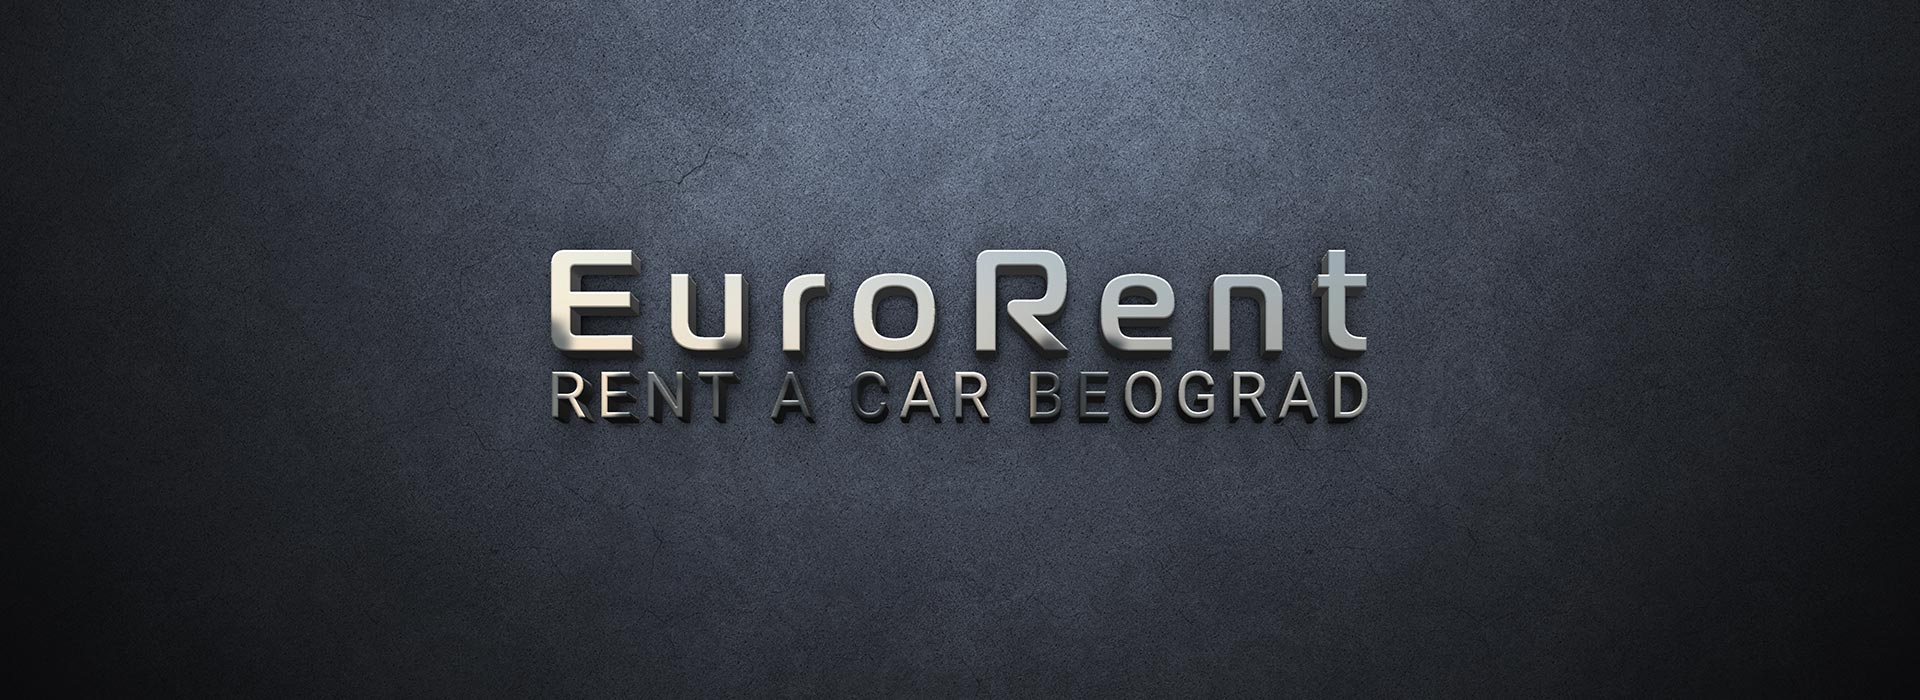 Rent a car Beograd | 404